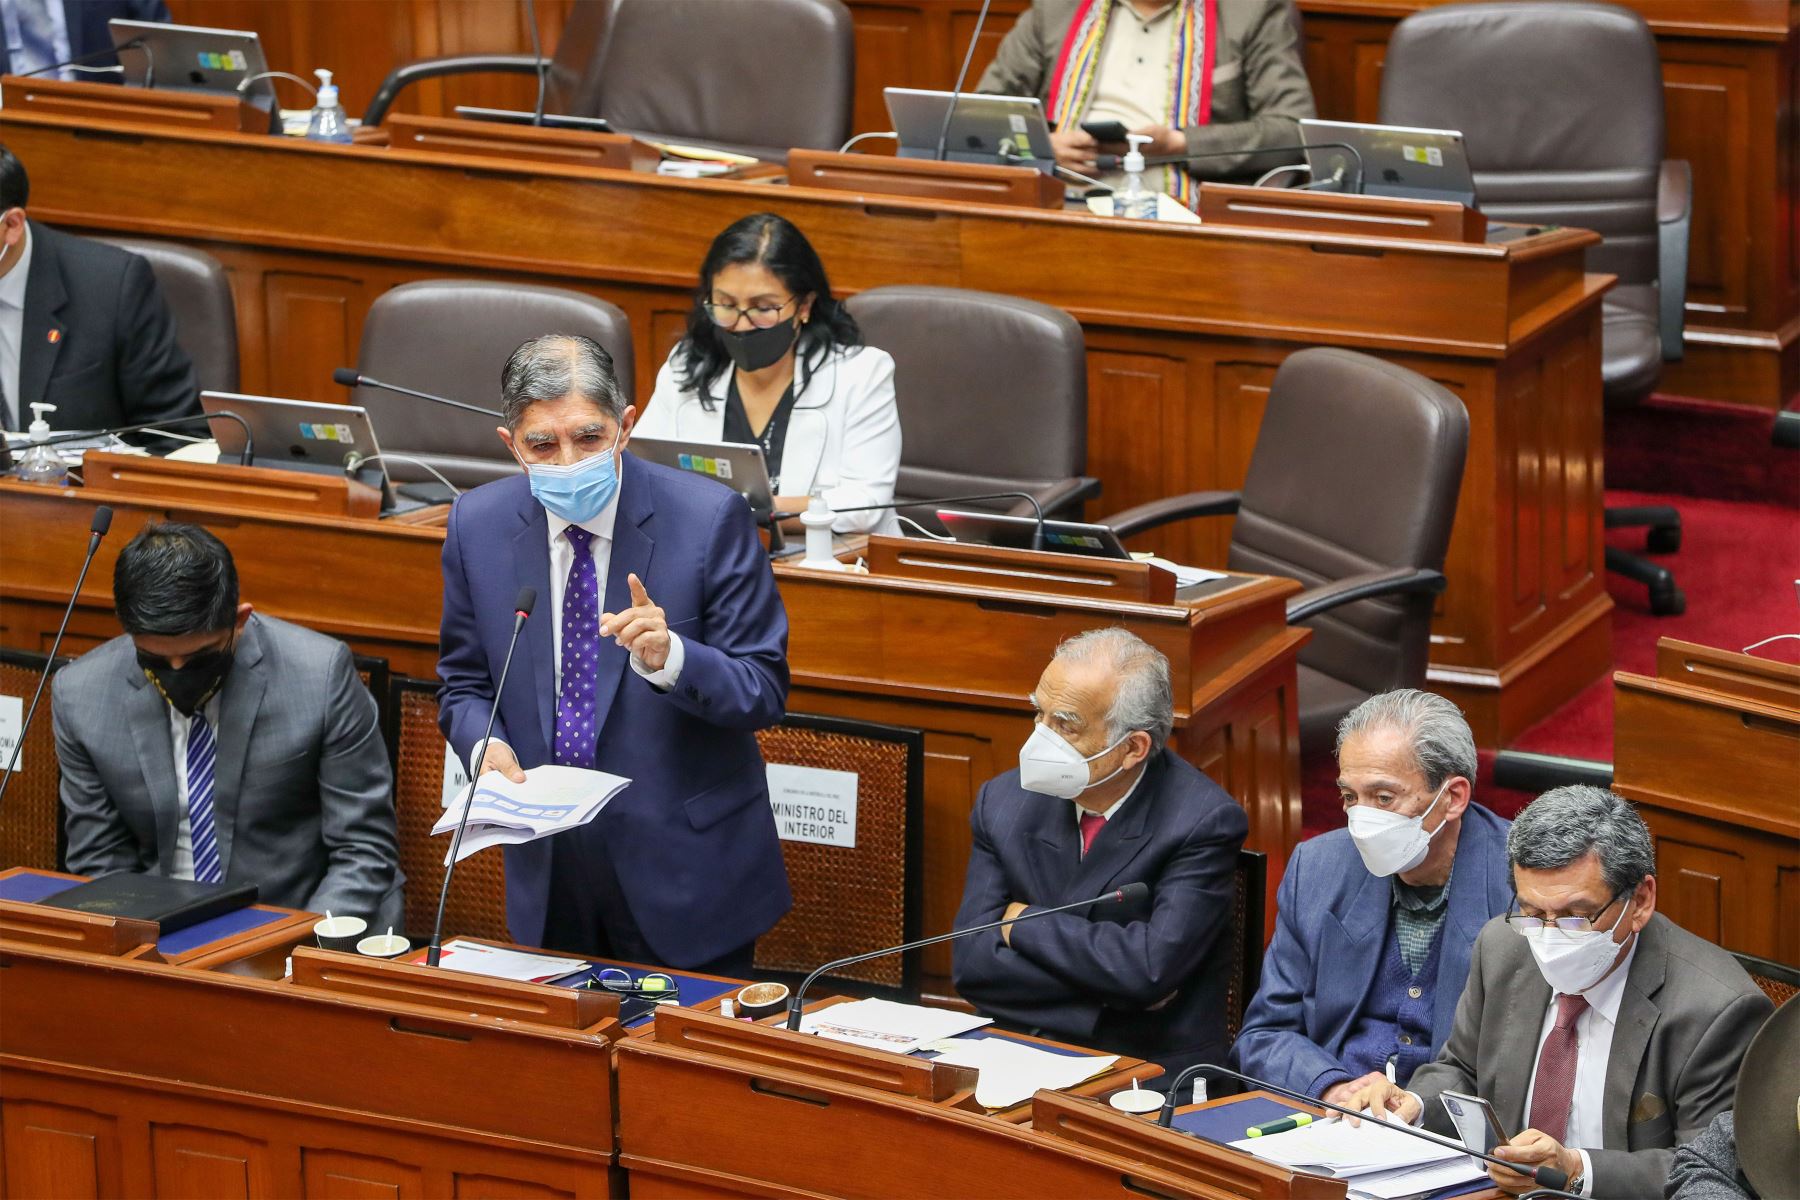 El ministro del Interior, Avelino Guillén  participa en la sesión  plenaria del Congreso donde se sustenta  el Presupuesto del Sector Público para el año fiscal 2022.
Foto: PCM